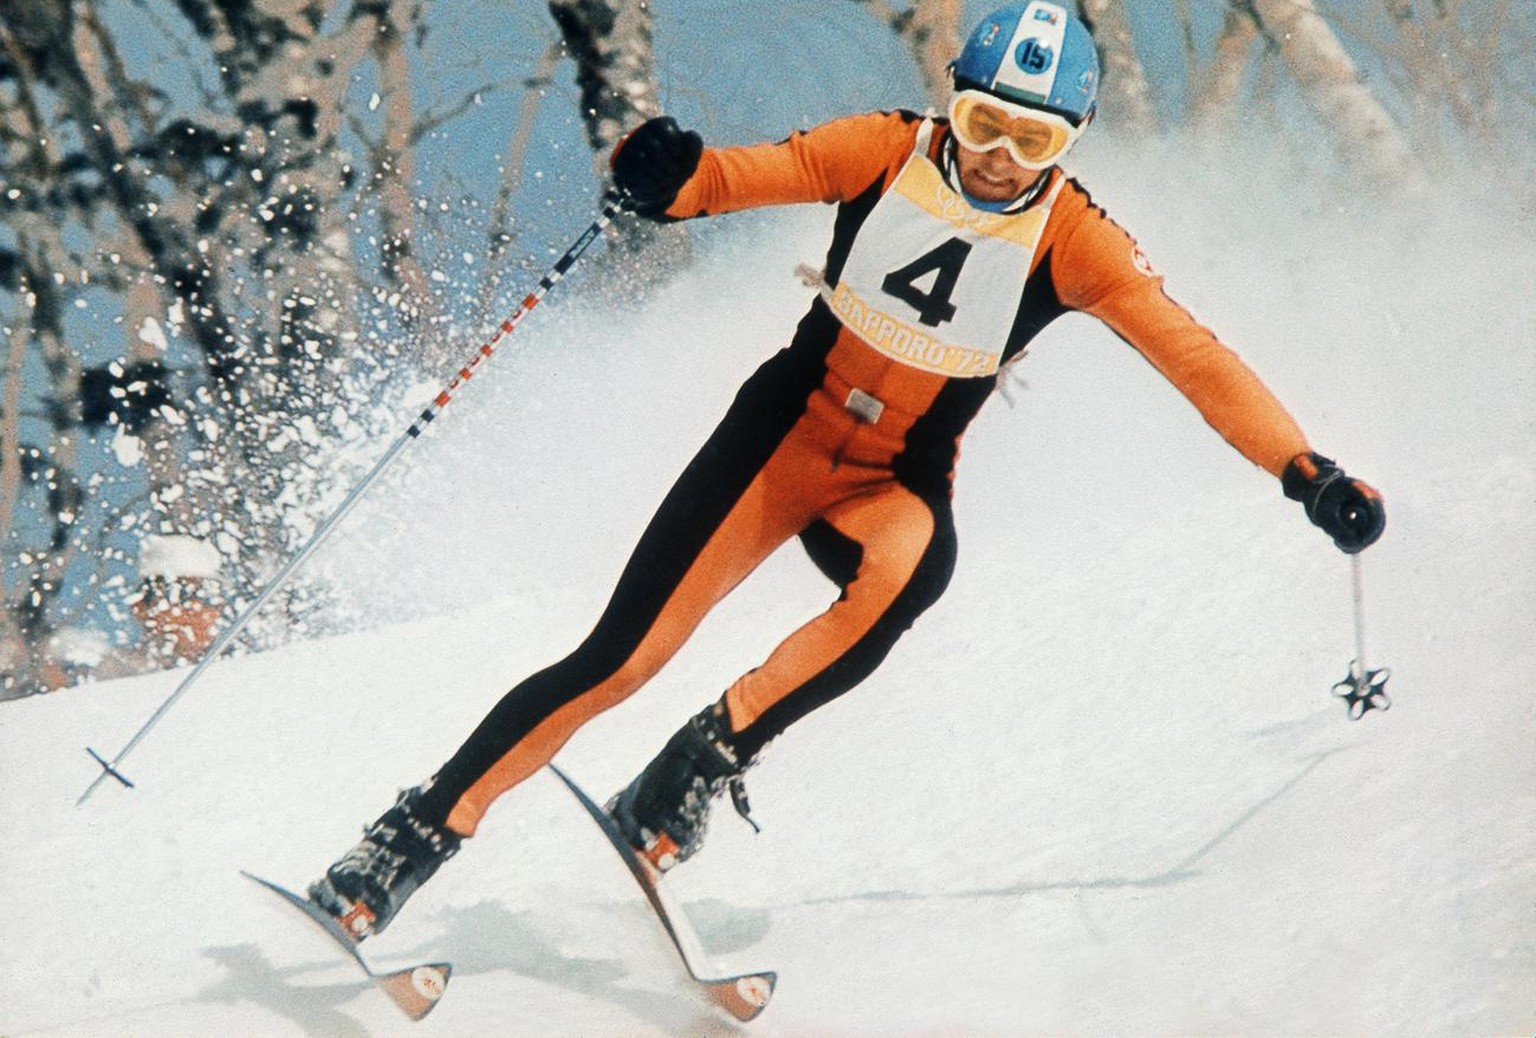 Bernhard Russi auf dem Weg zu seinem Abfahrts-Olympiasieg an den Olympischen Winterspielen in Sapporo, Japan, 1972. (KEYSTONE/Str)